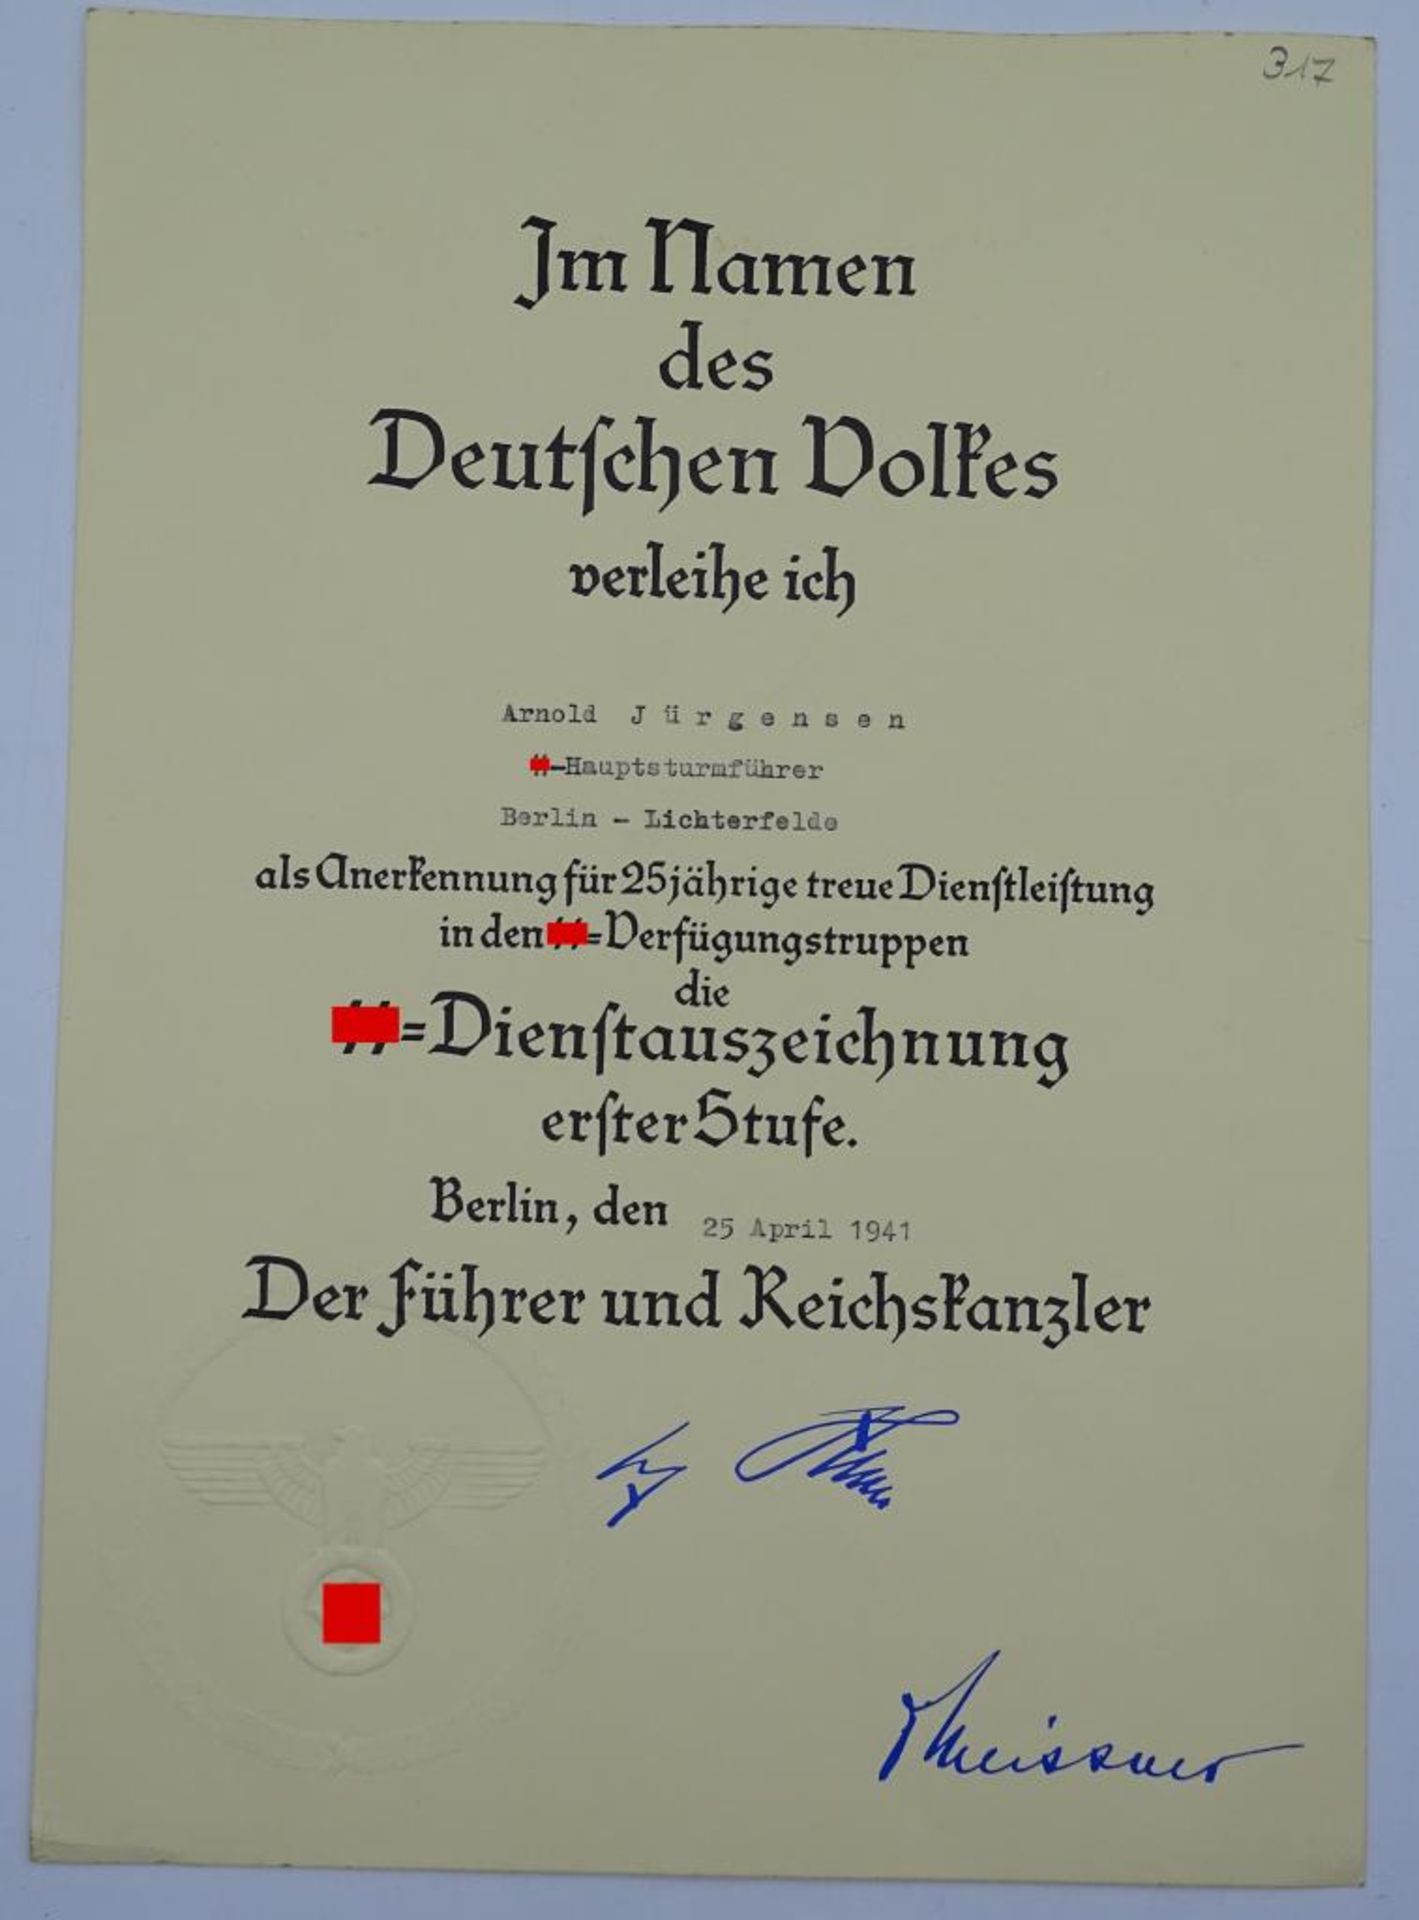 Große Dienstzeiturkunde für 25 Jahre in der SS, ausgestellt für einen Hauptsturmführer in Berlin